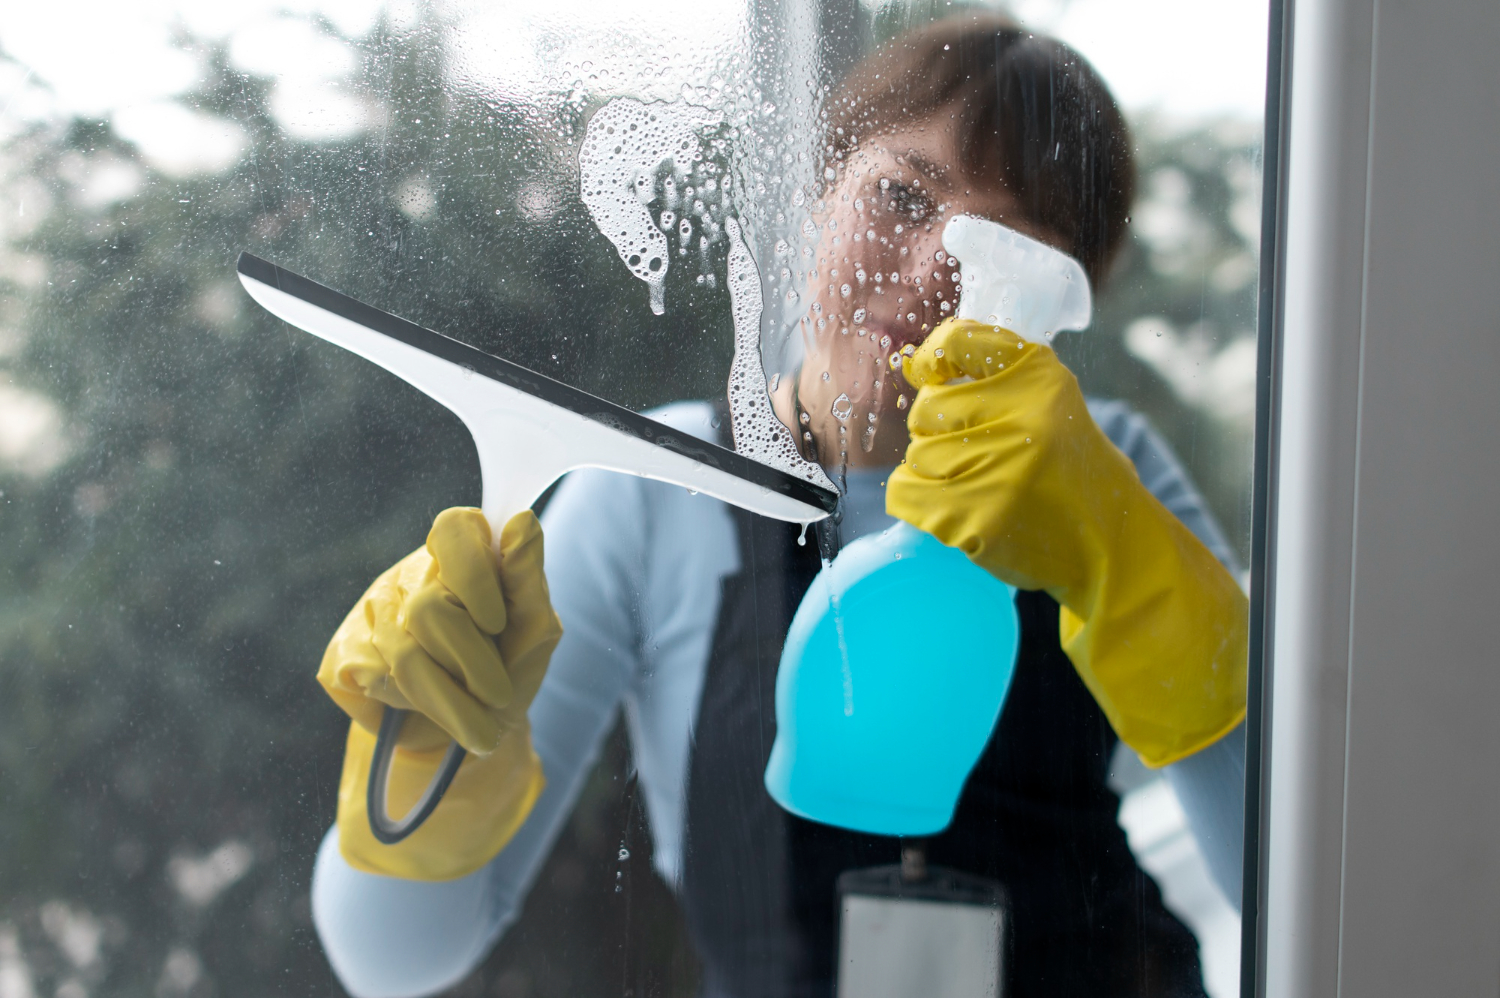 Limpador caseiro faça isso e deixe suas janelas impecavelmente limpas